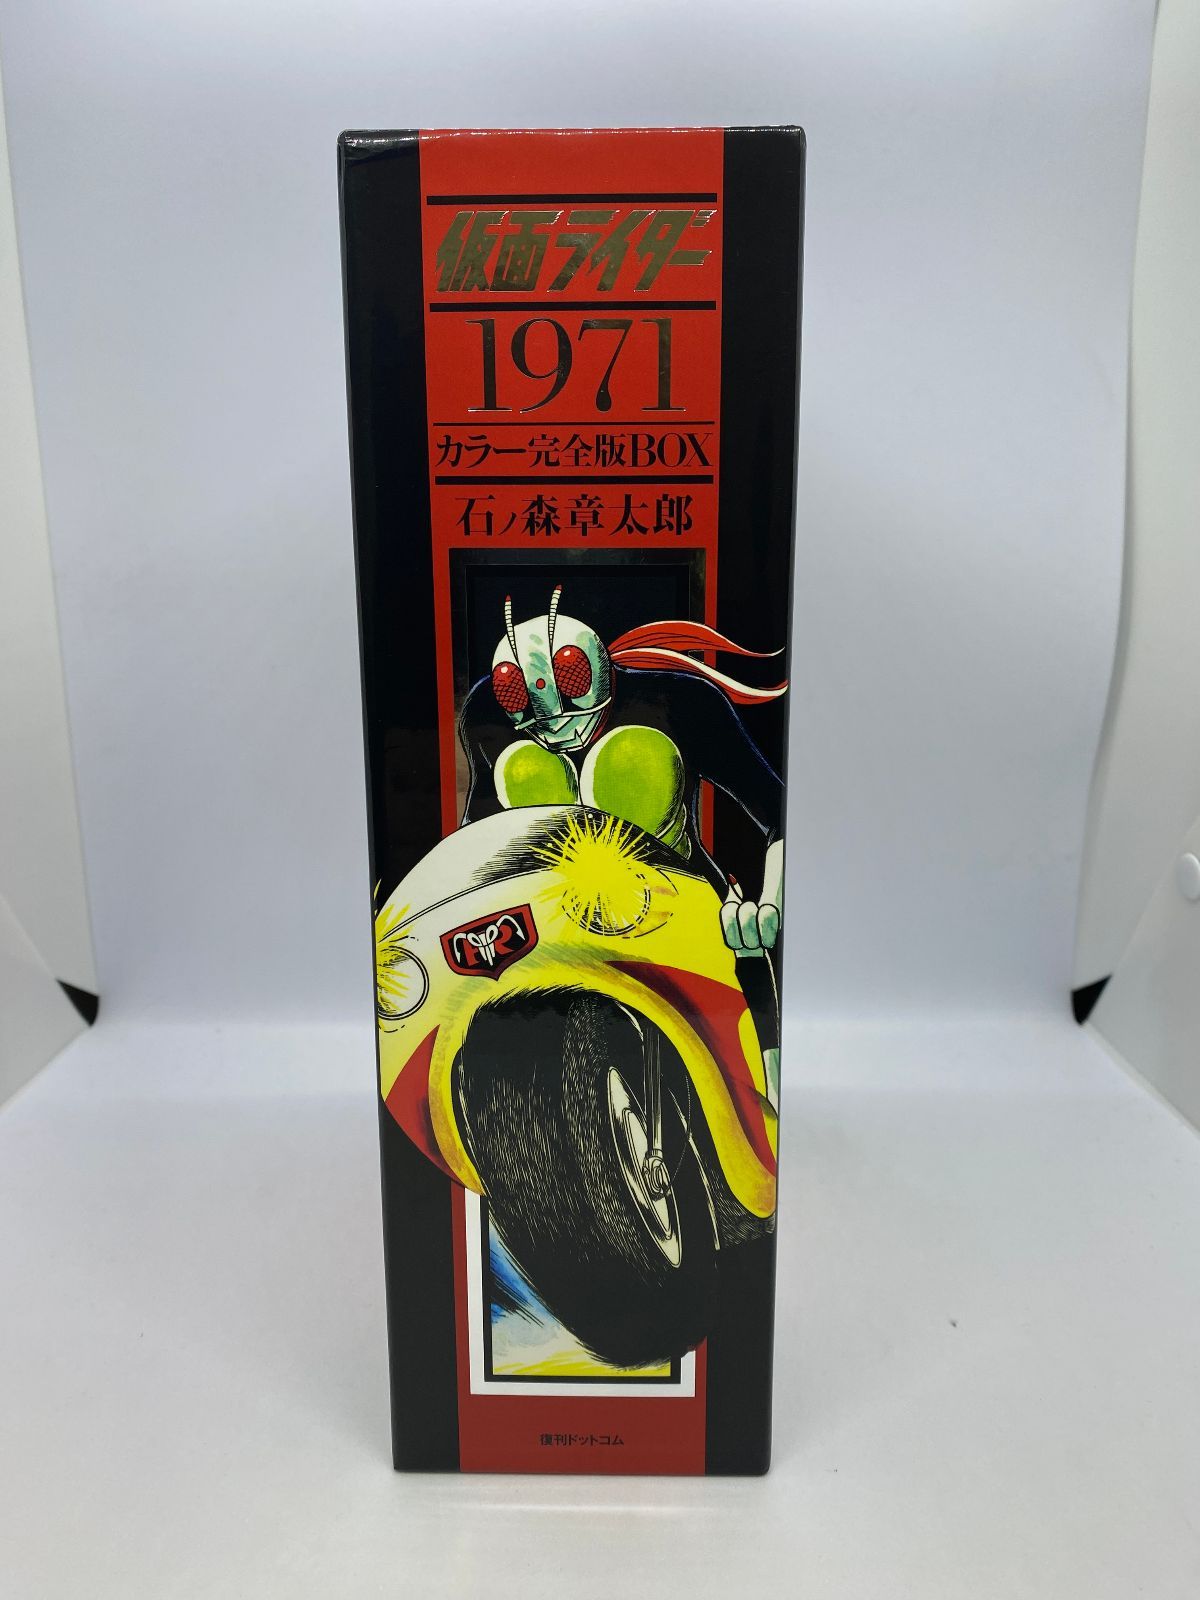 仮面ライダー1971 カラー完全版BOX - メルカリ